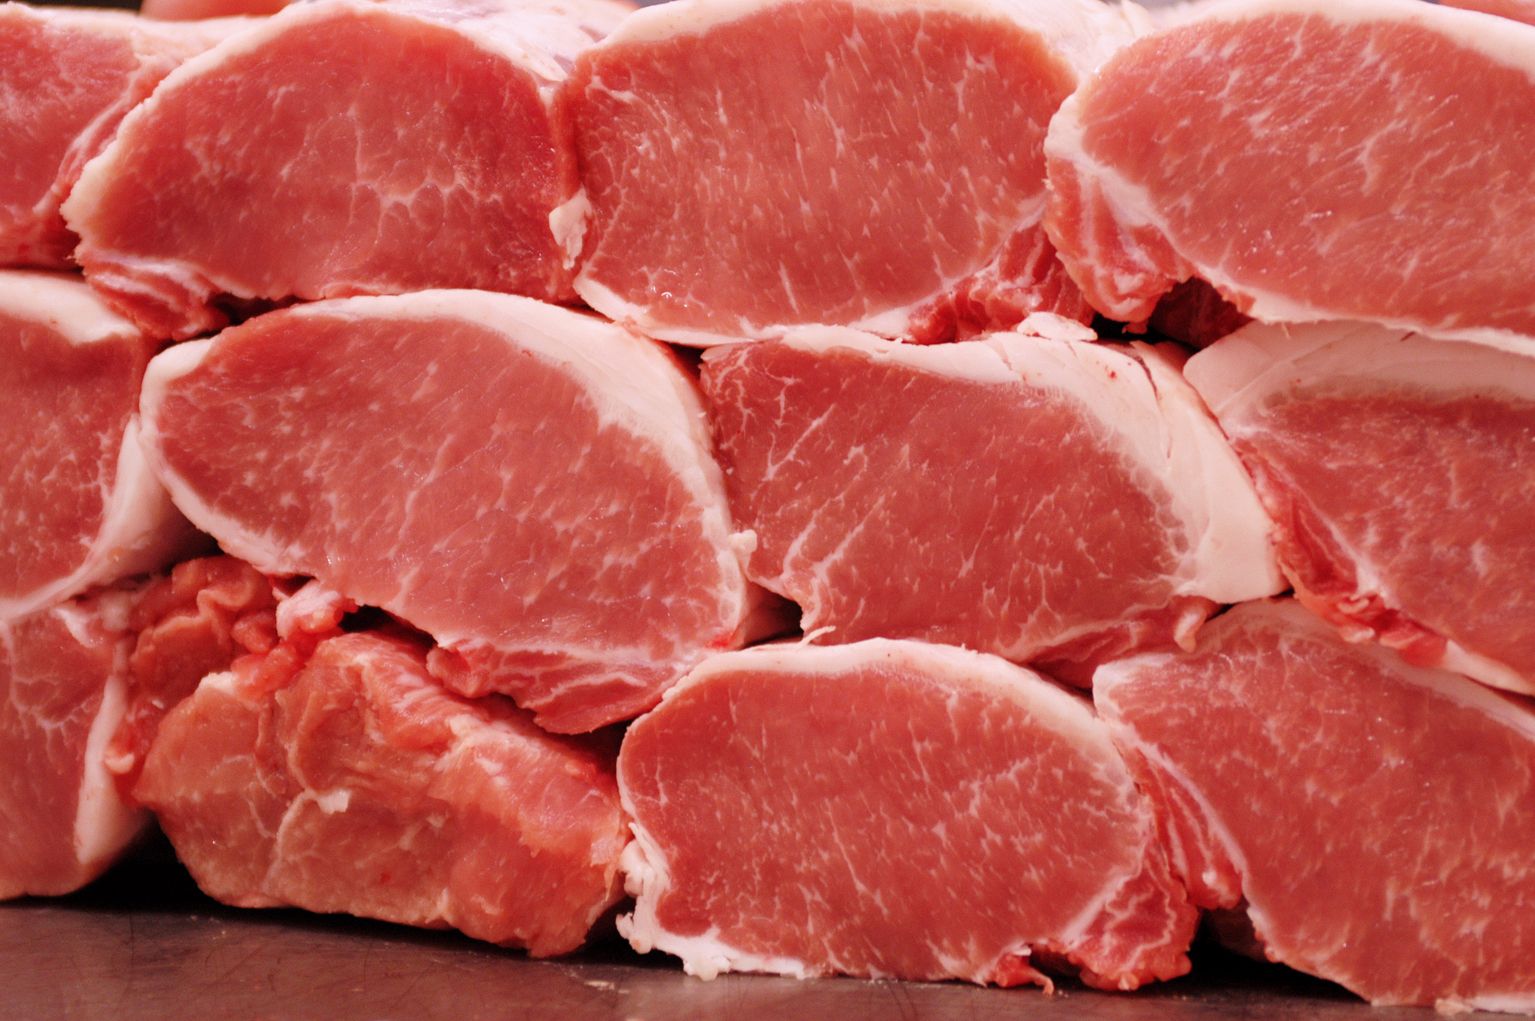 Dana eti yerine domuz eti sattı ortalık karıştı